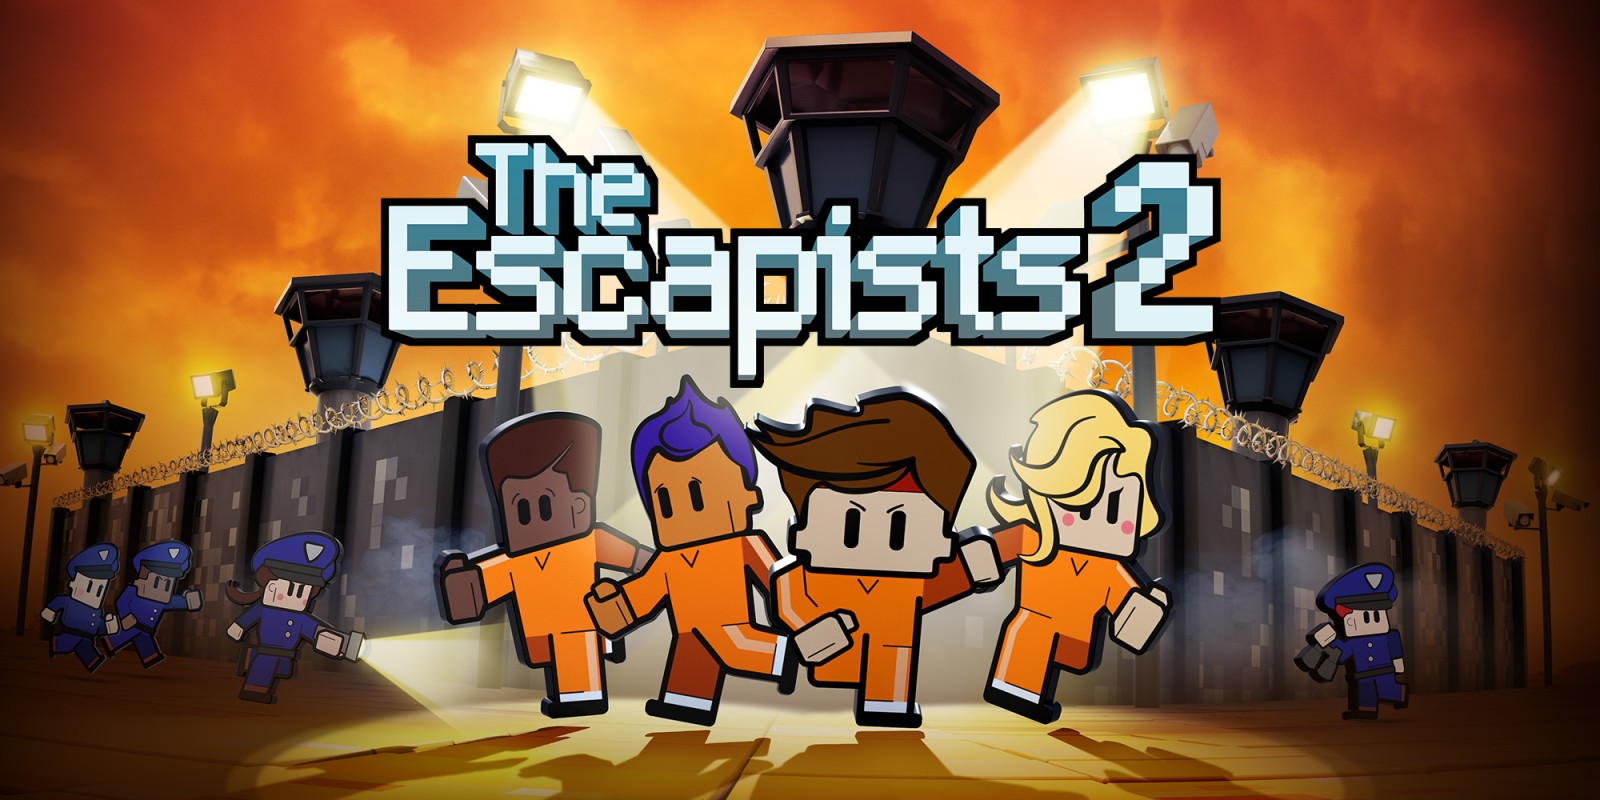 download free the escapist 2 prison